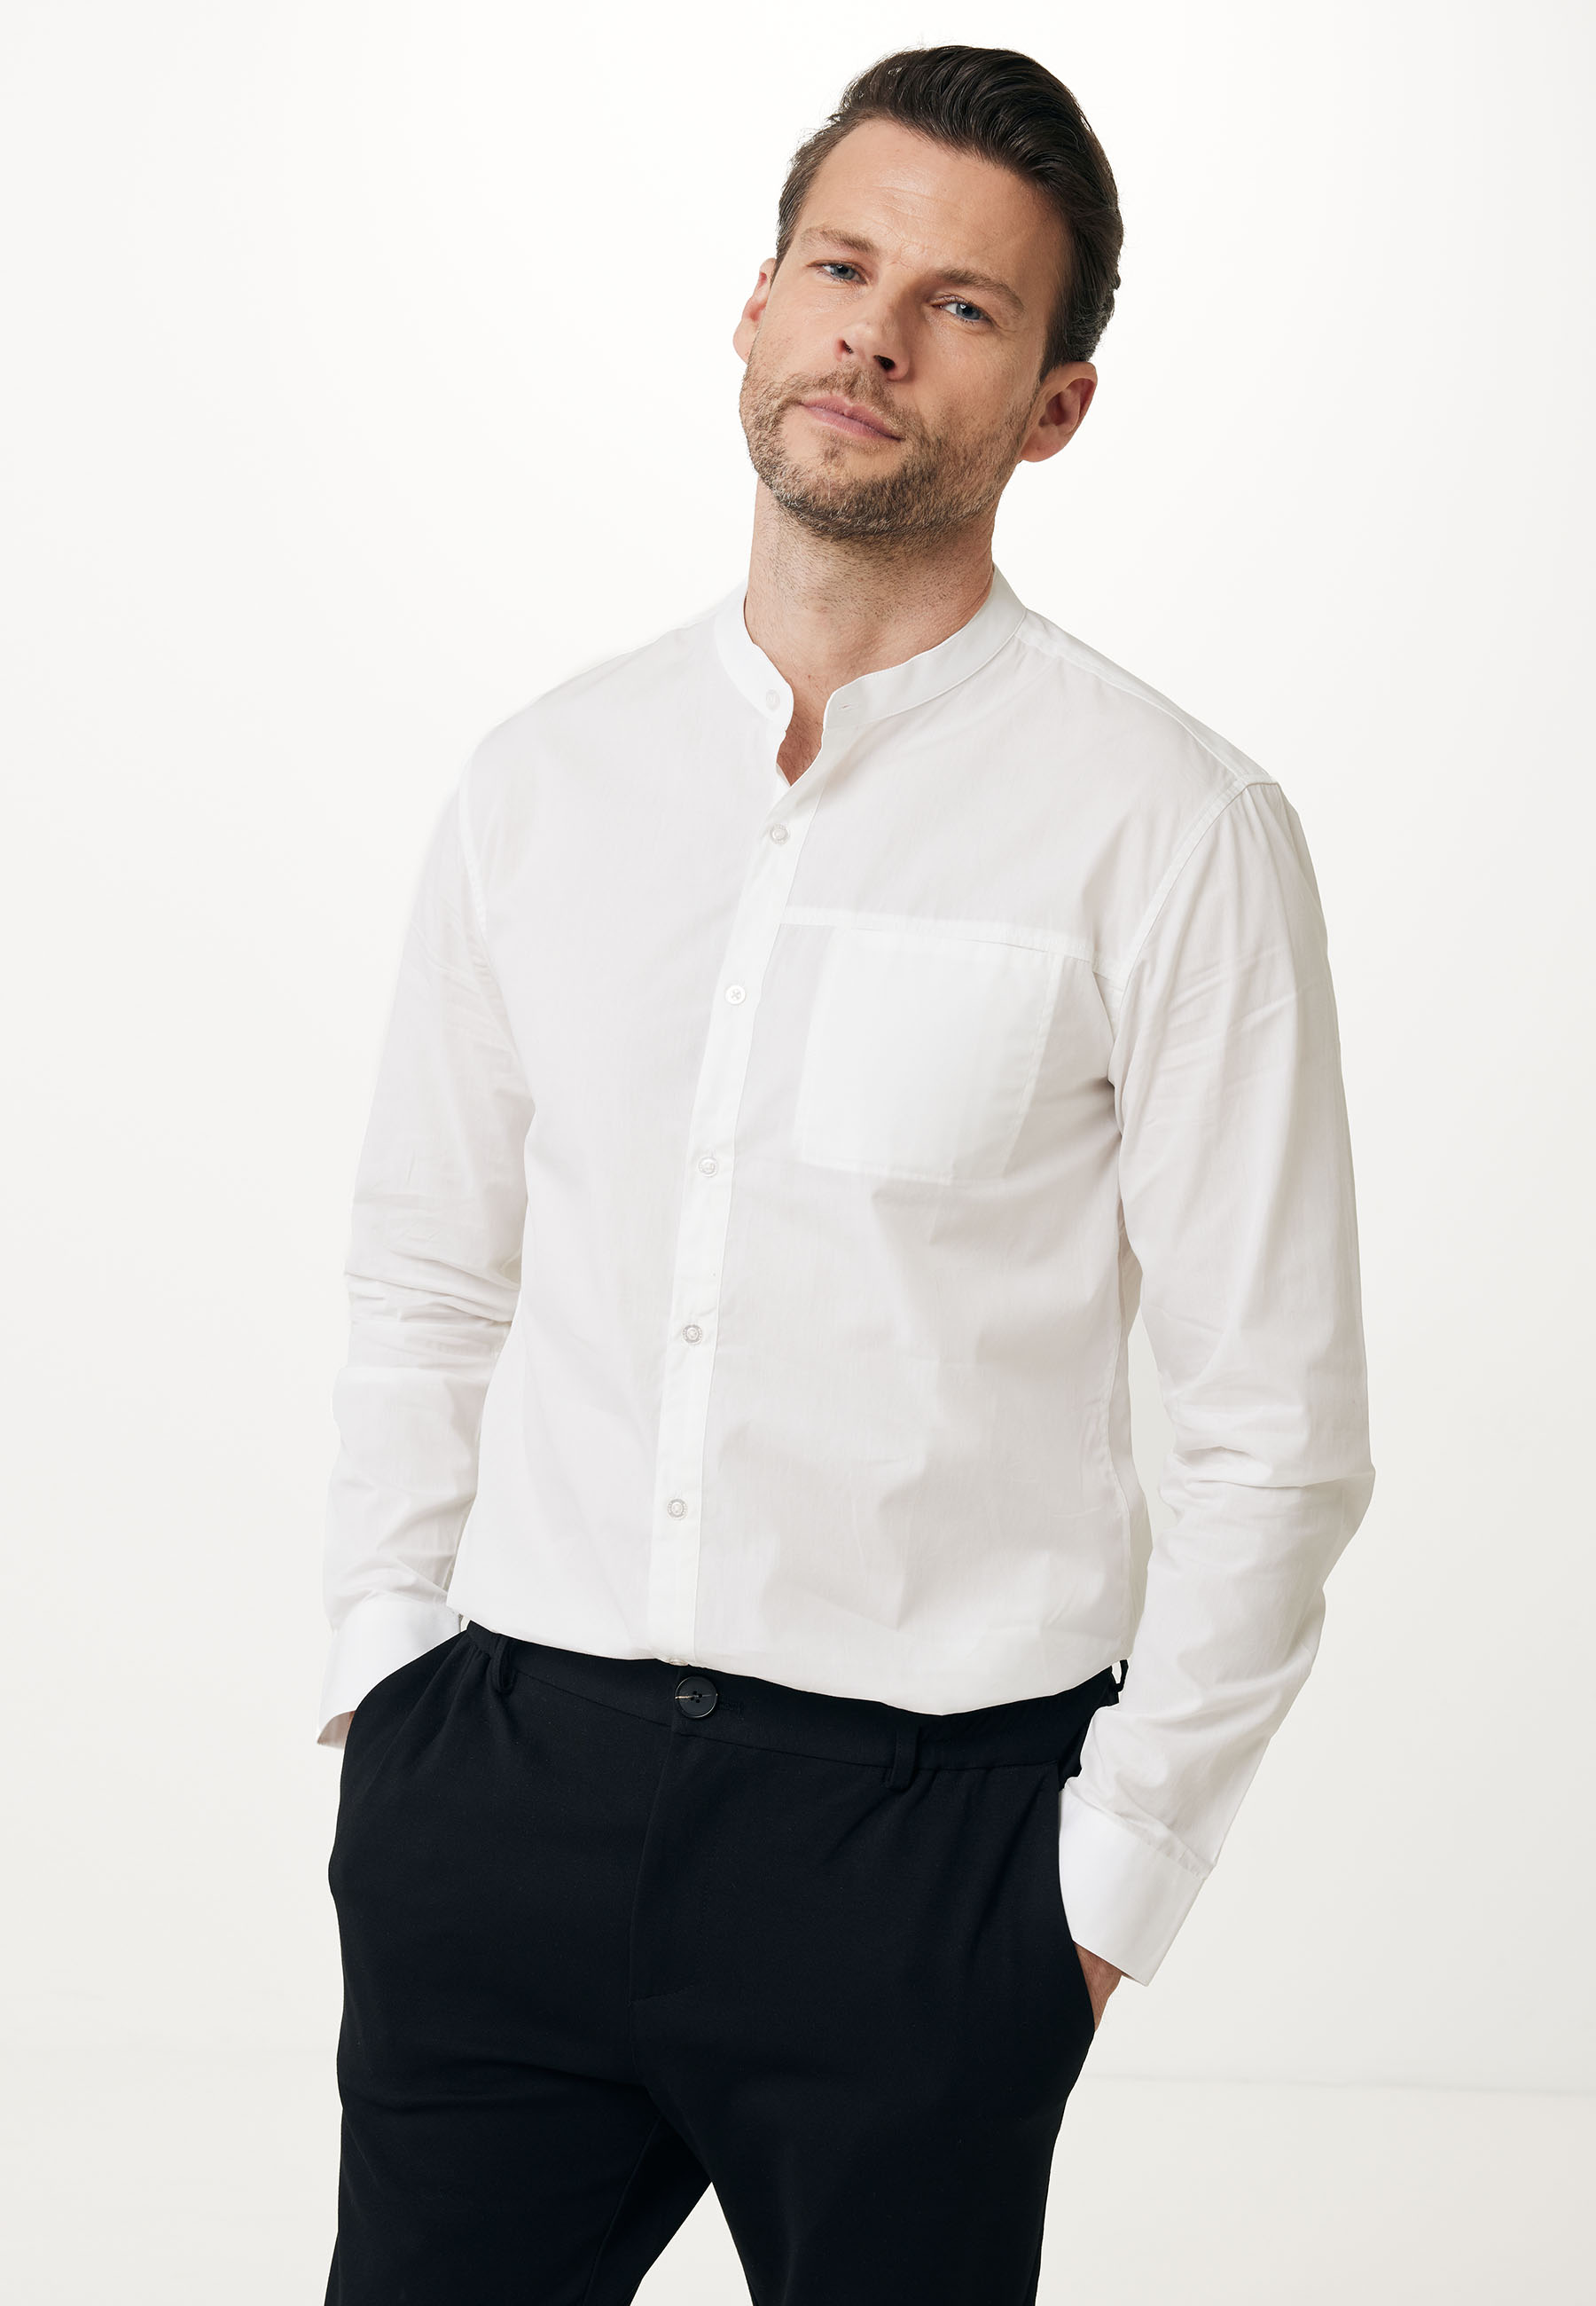 Рубашка Mexx мужская, размер XL, белая, молочная, TU1516036M